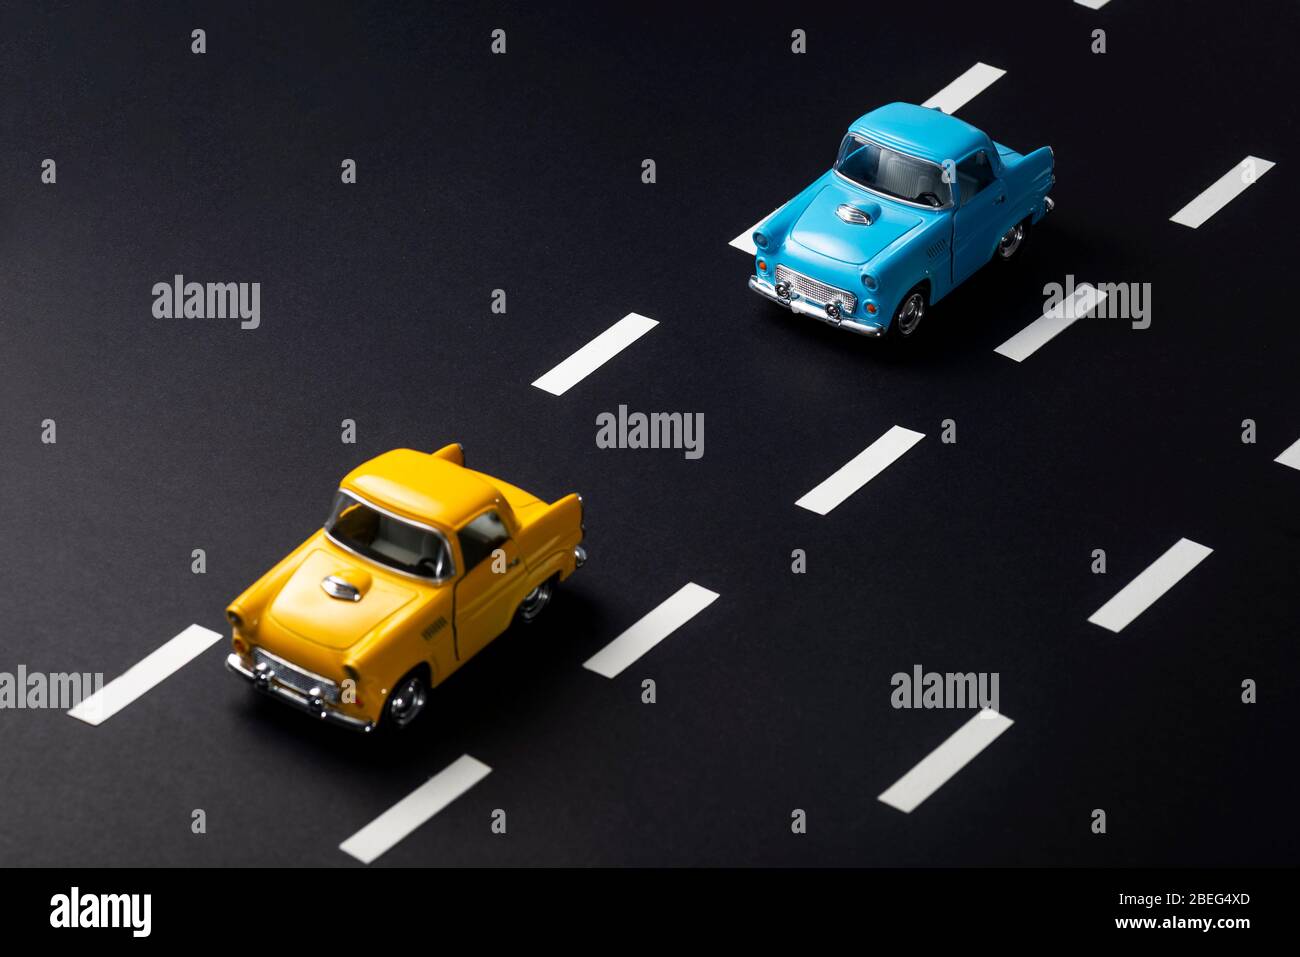 Deux voitures de jouet sur la route l'une après l'autre. L'une est bleue, l'autre est jaune. L'image indique la distance suivante dans le trafic. Banque D'Images